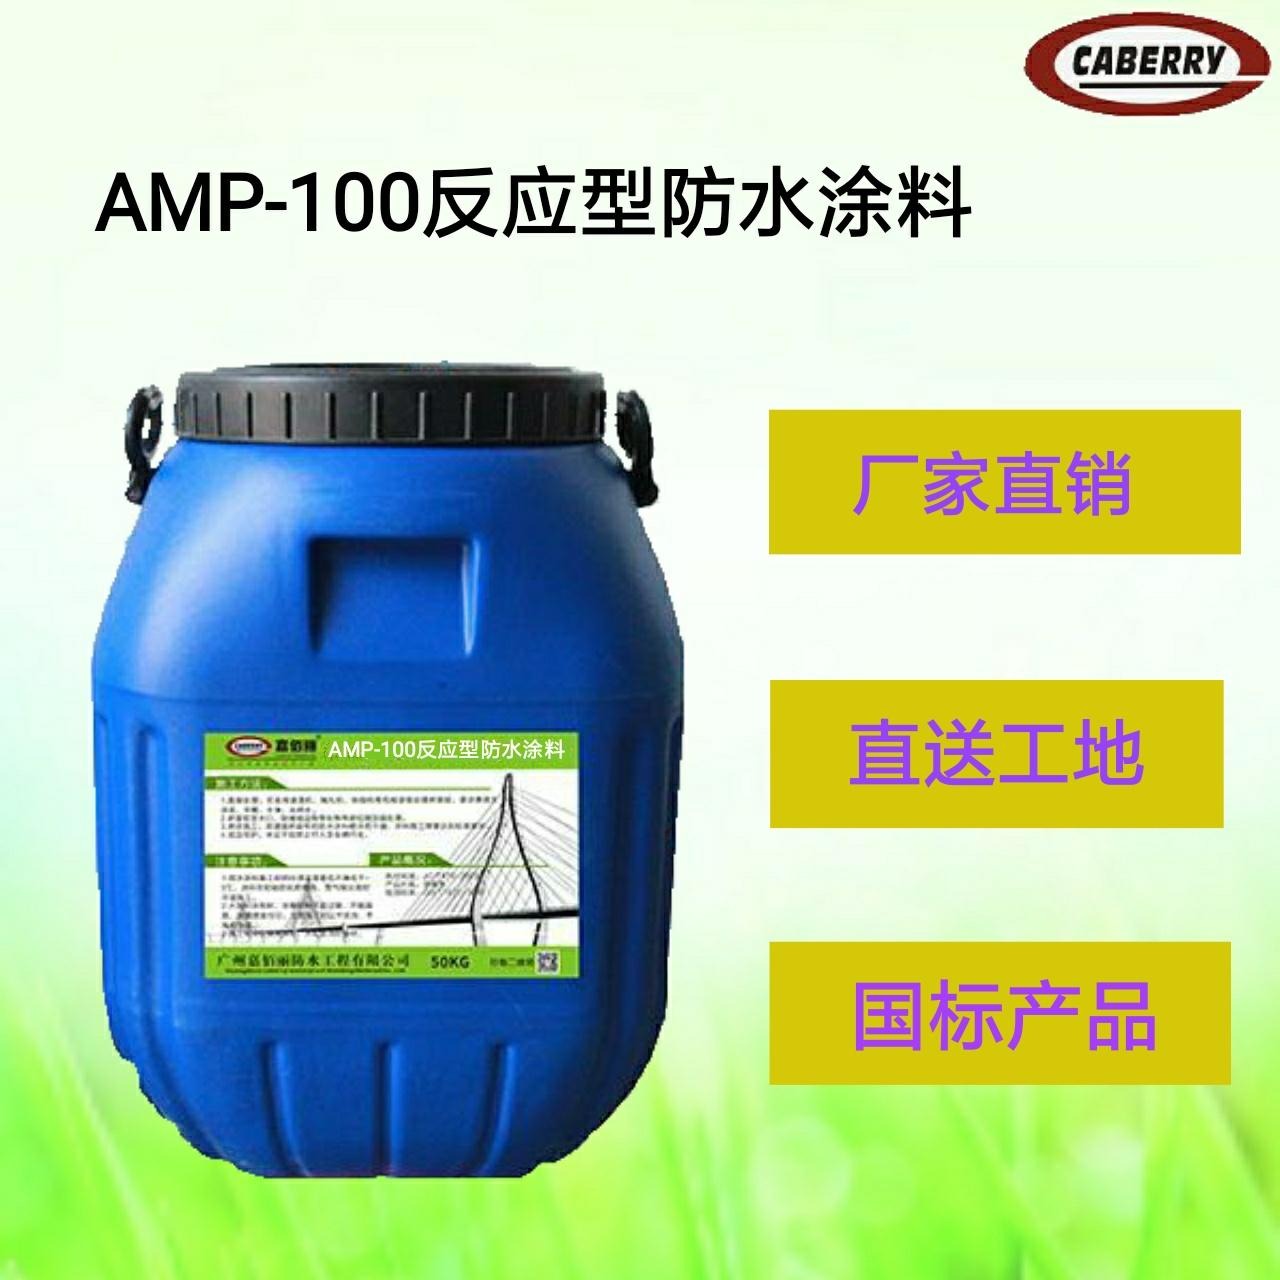 工程路面专用 AMP-100反应型防水材料 施工报价